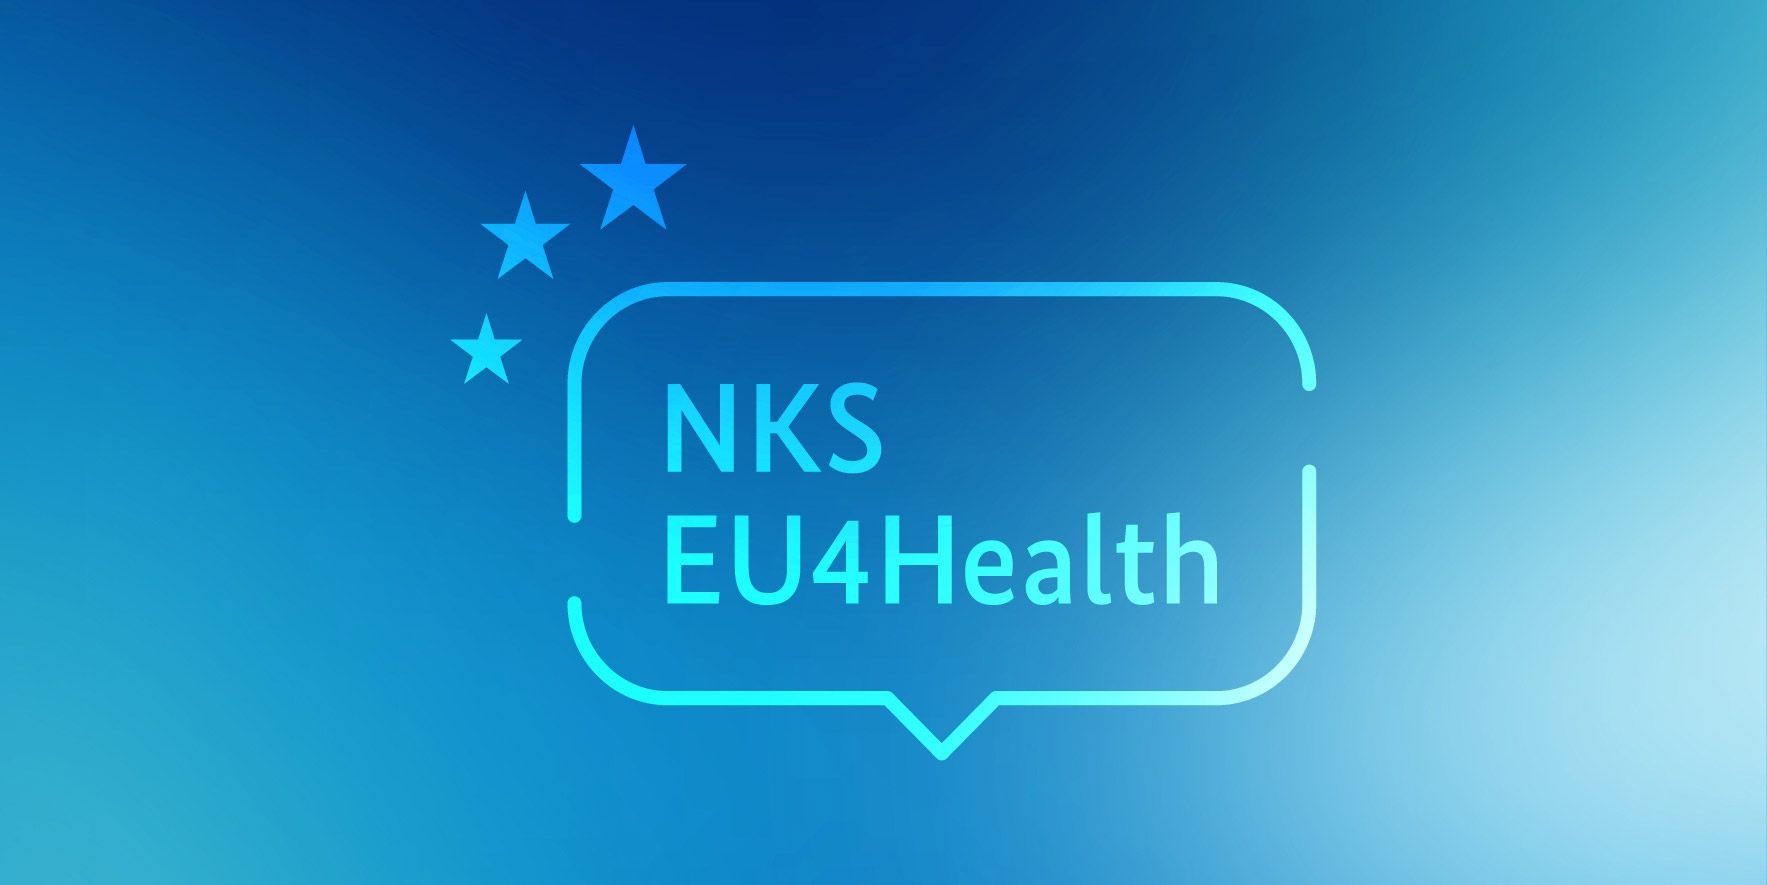 Die Nationale Kontaktstelle EU4Health in Deutschland informiert zum EU-Gesundheitsprogramm EU4Health – dem bislang größten Gesundheitsprogramm der Europäischen Union.